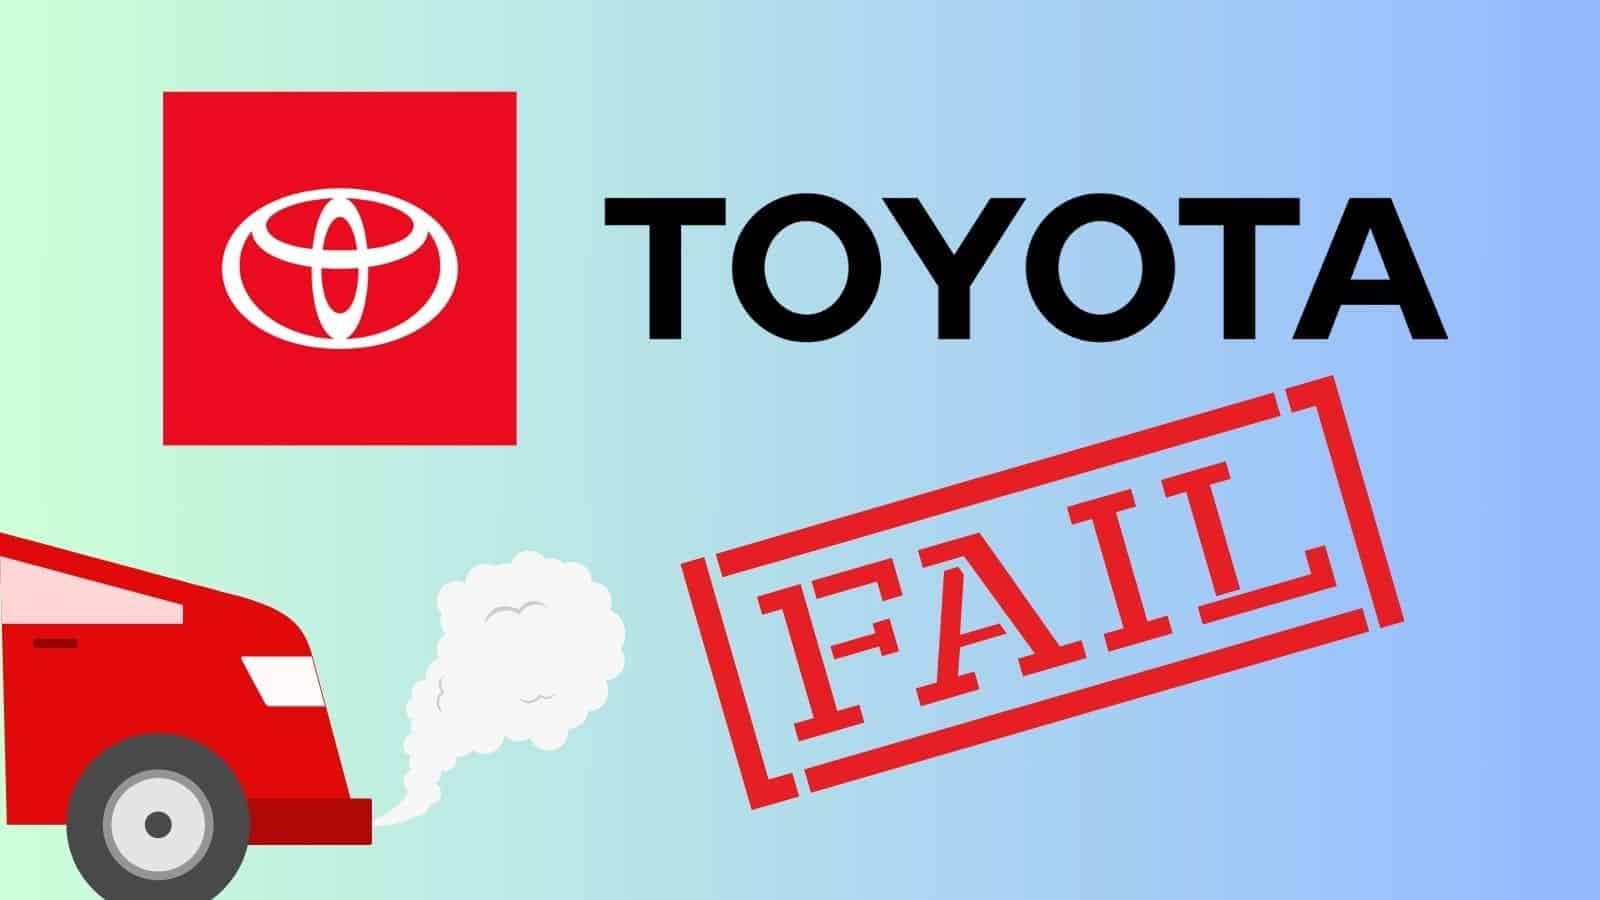 Toyota bocciata da InfluenceMap per il suo scarso impegno ambientale